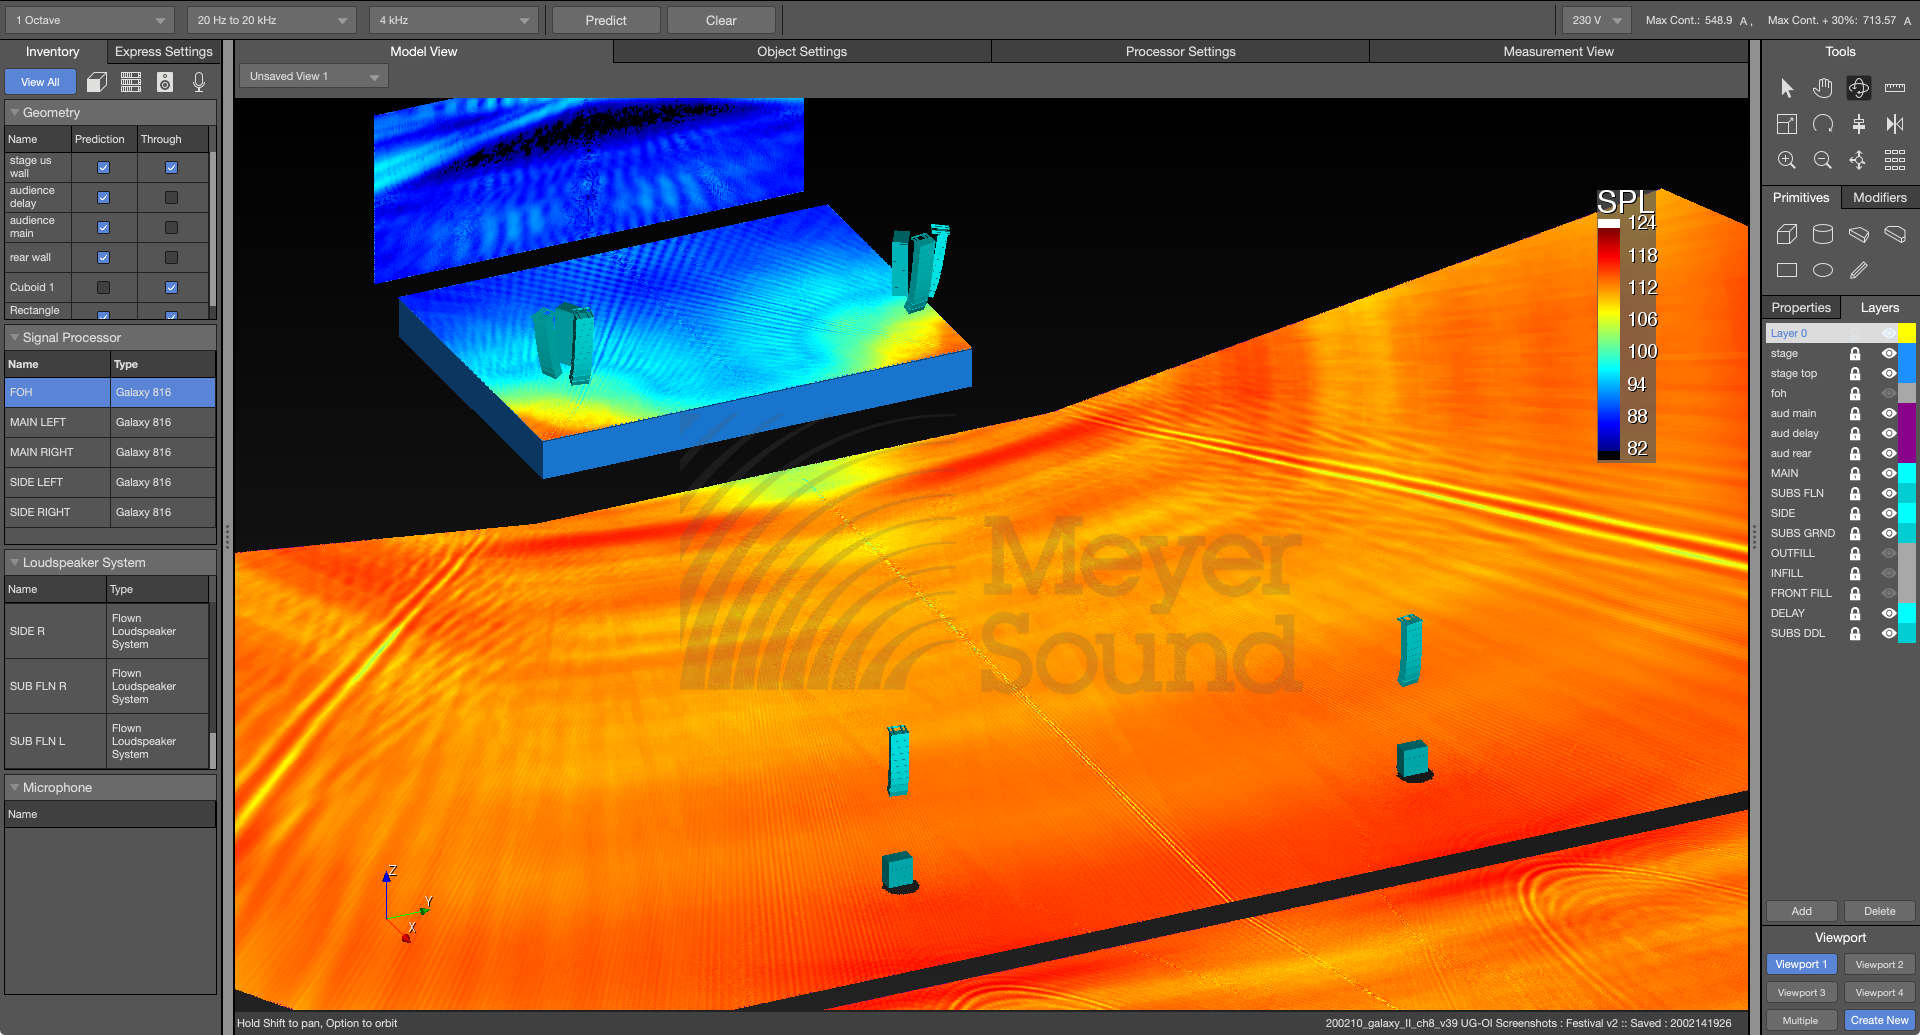 MAPP 3D  Meyer Sound